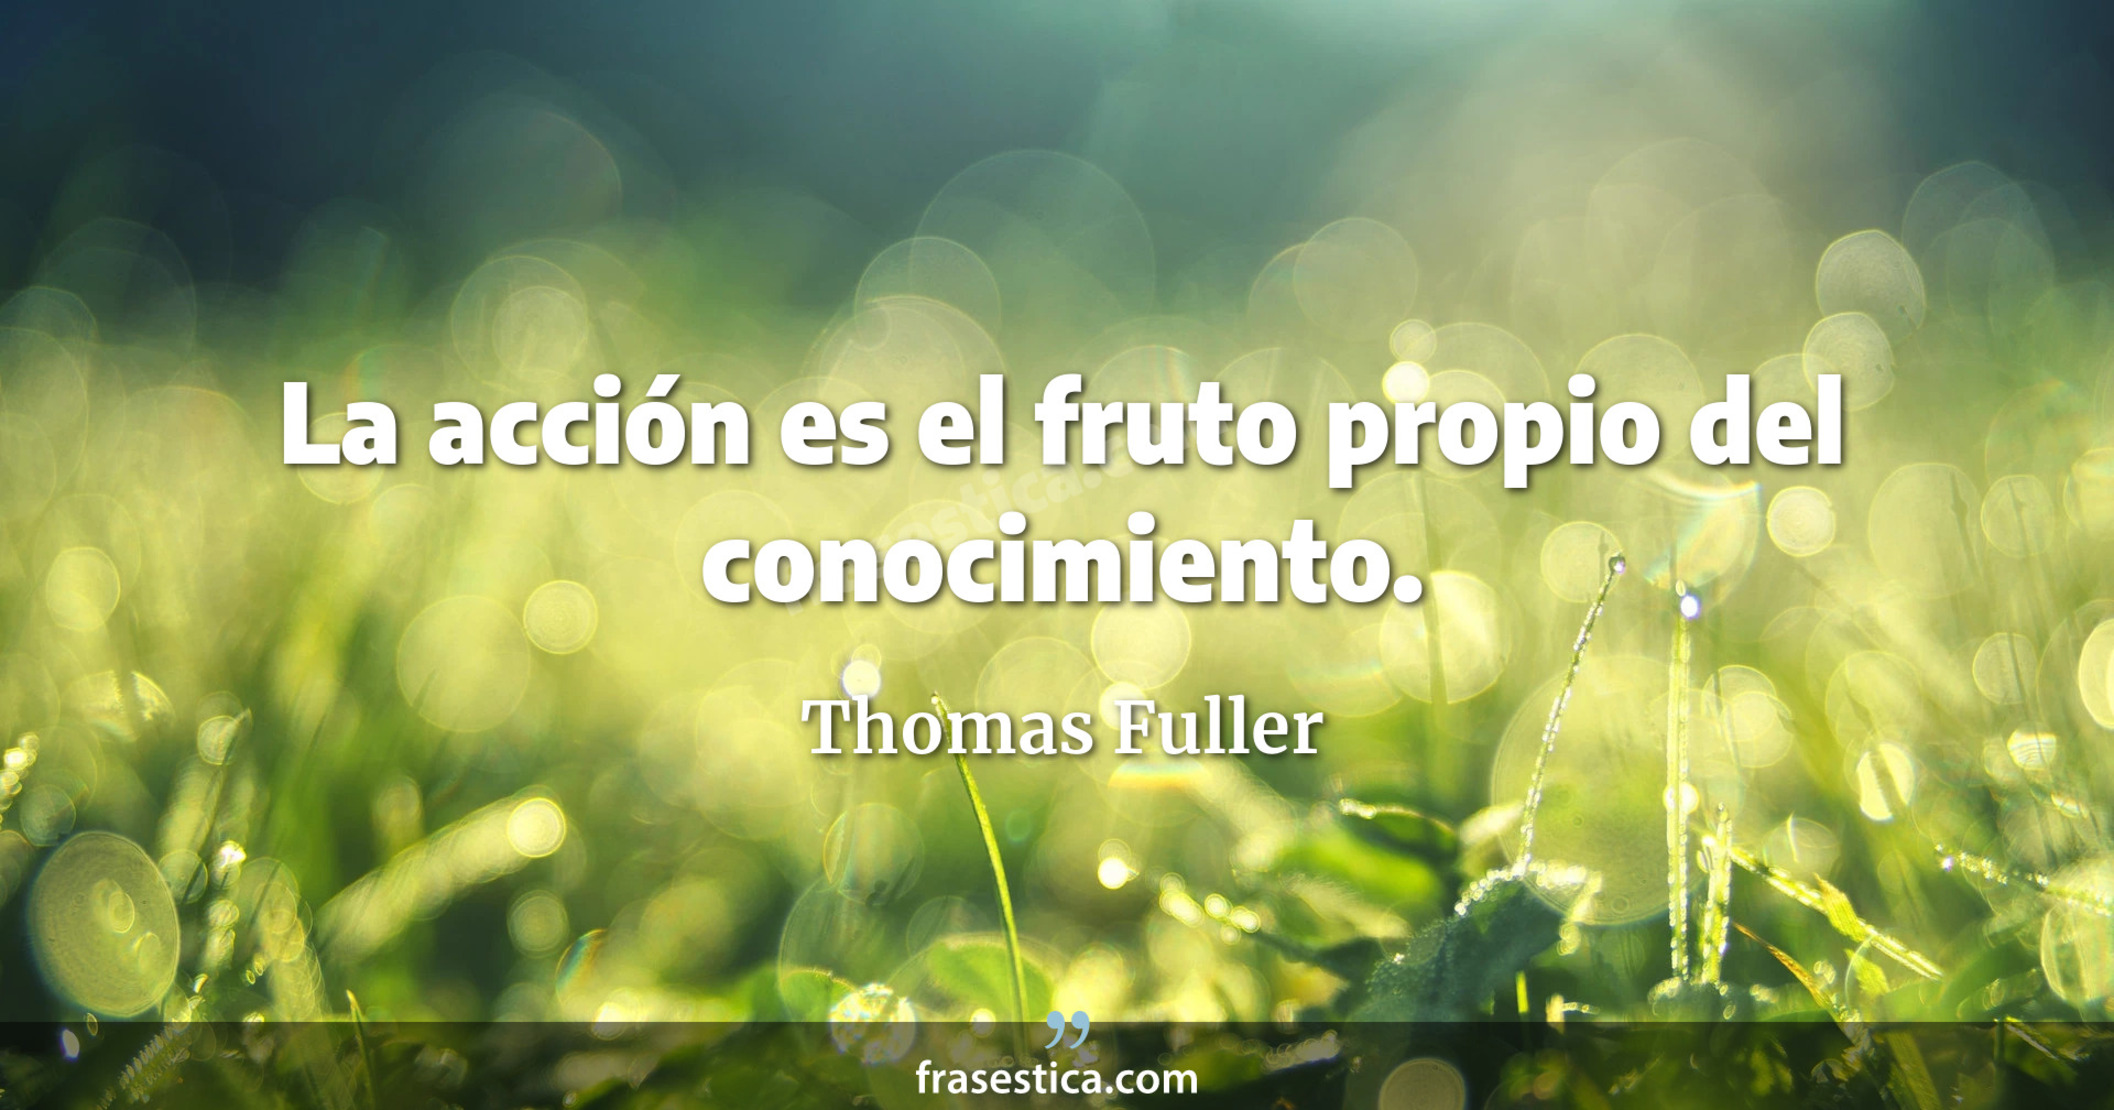 La acción es el fruto propio del conocimiento. - Thomas Fuller